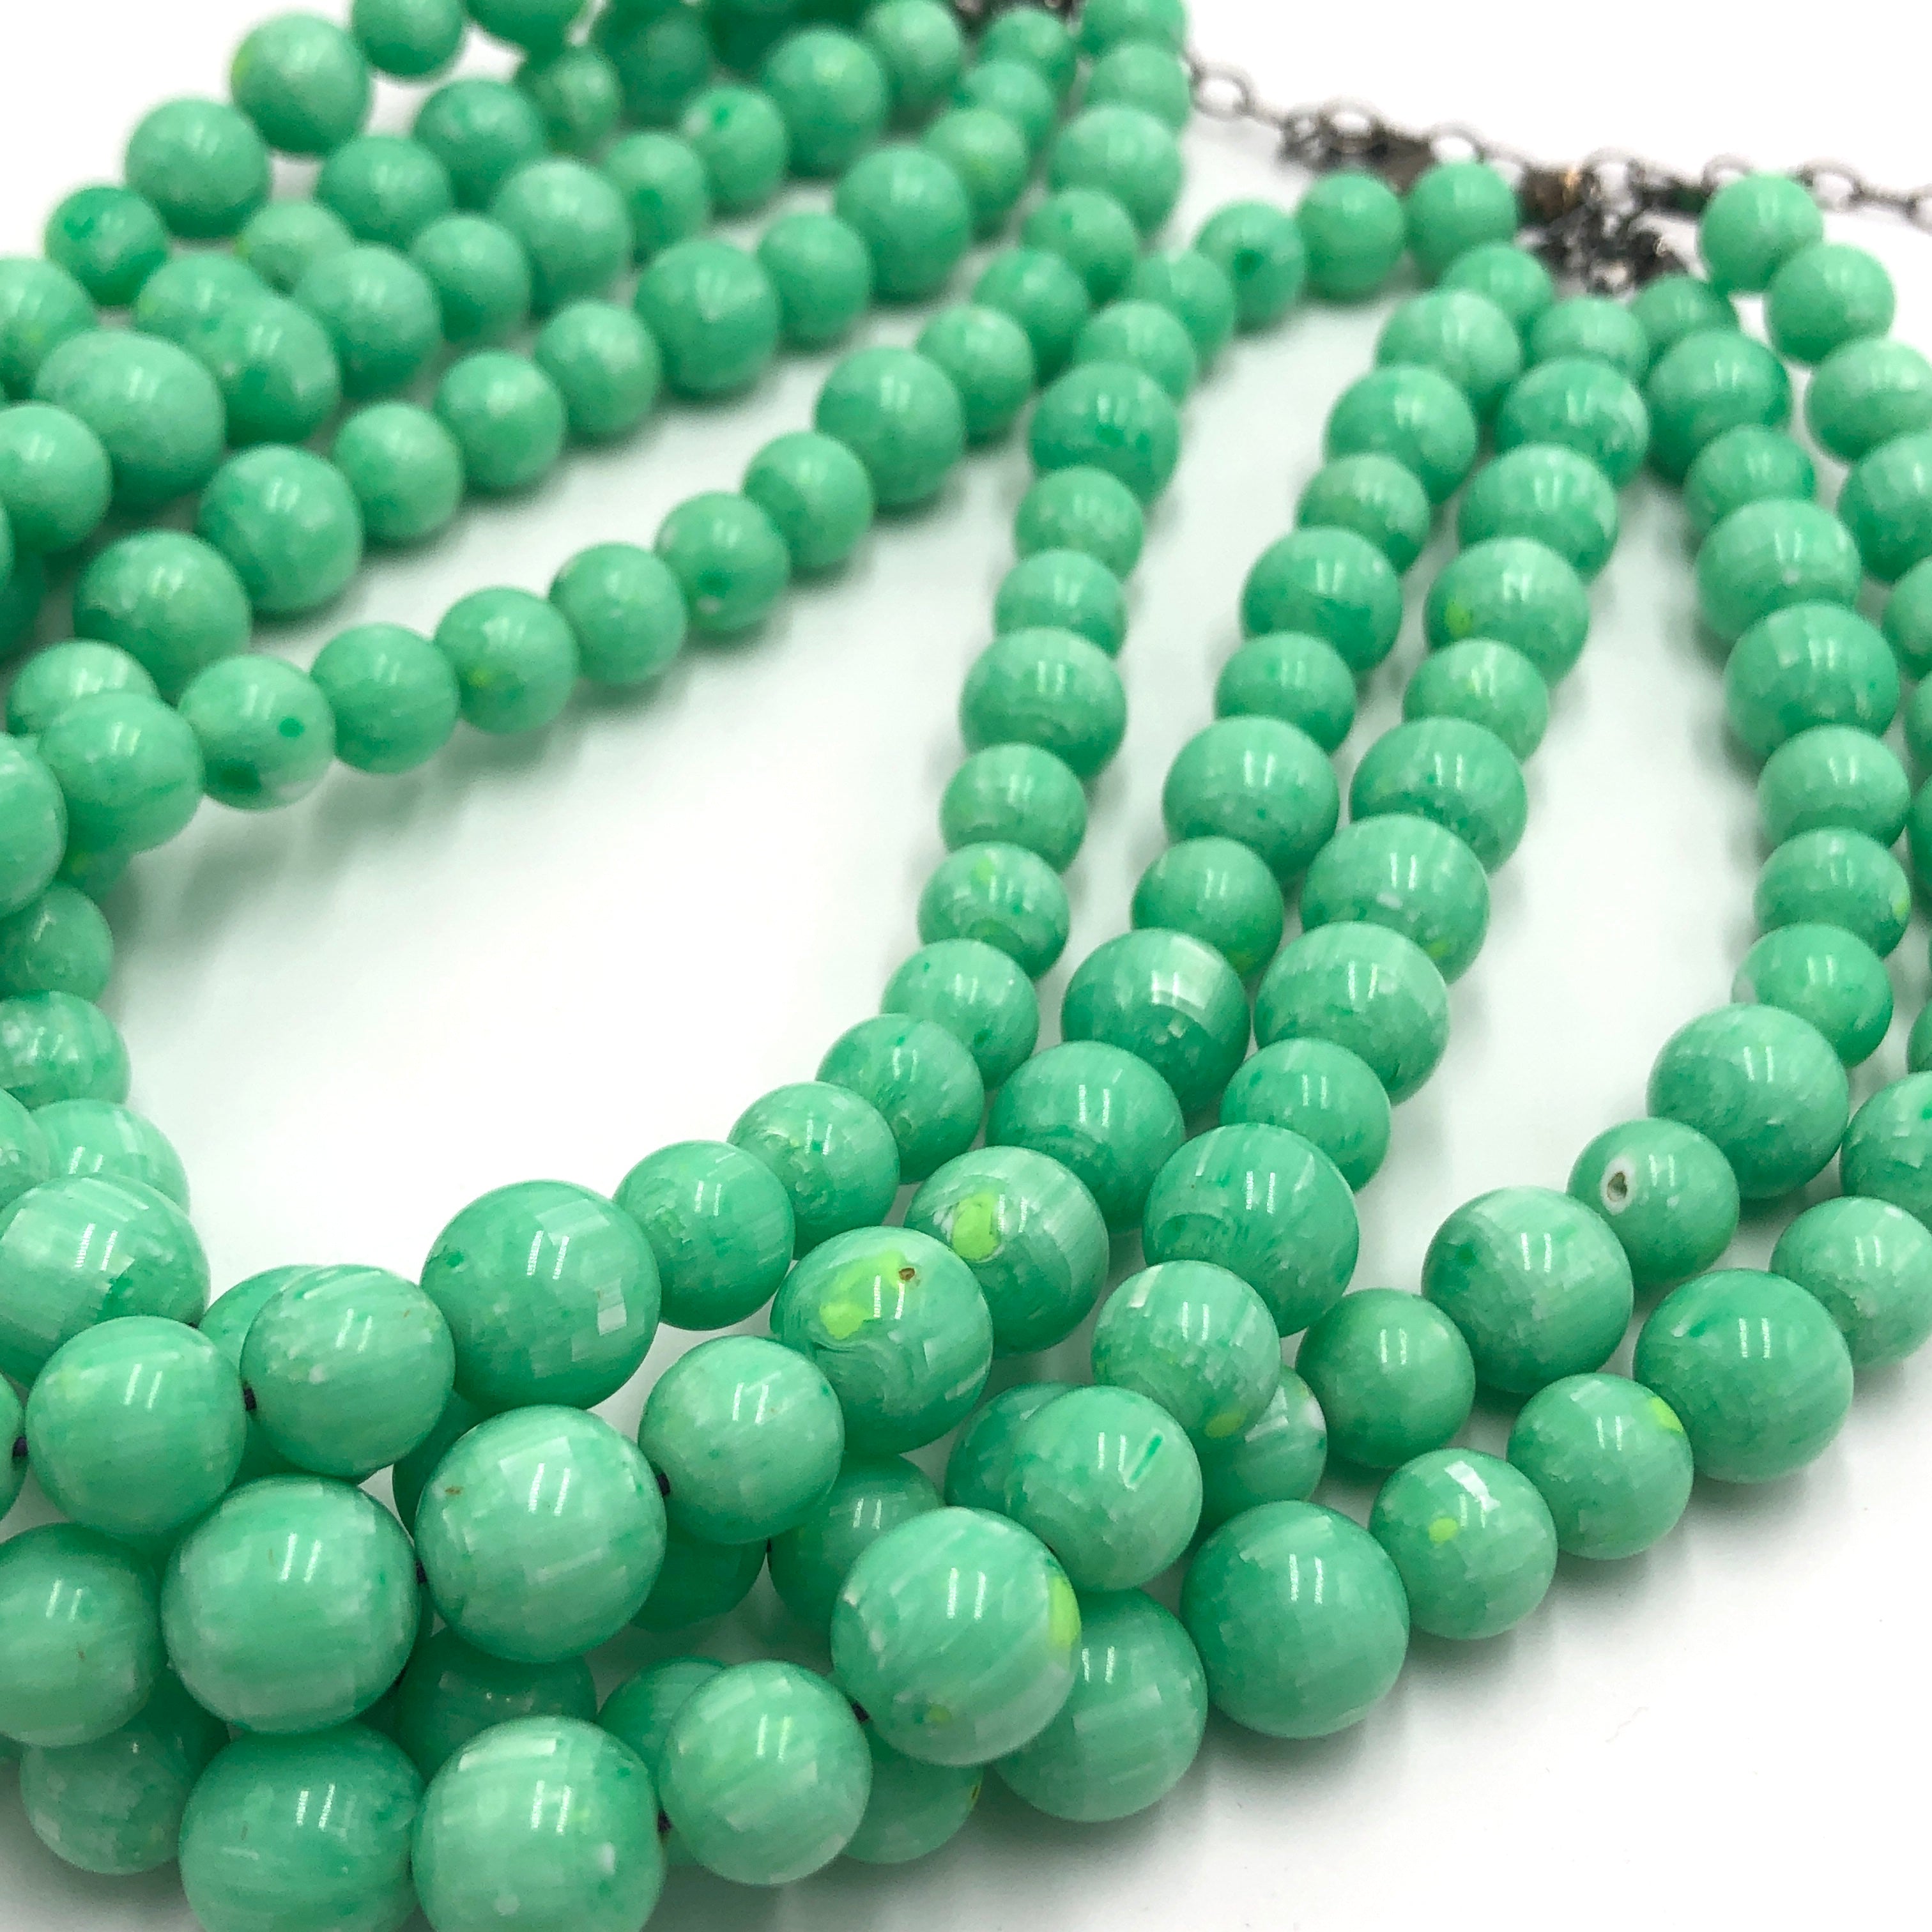 closeup of green beads